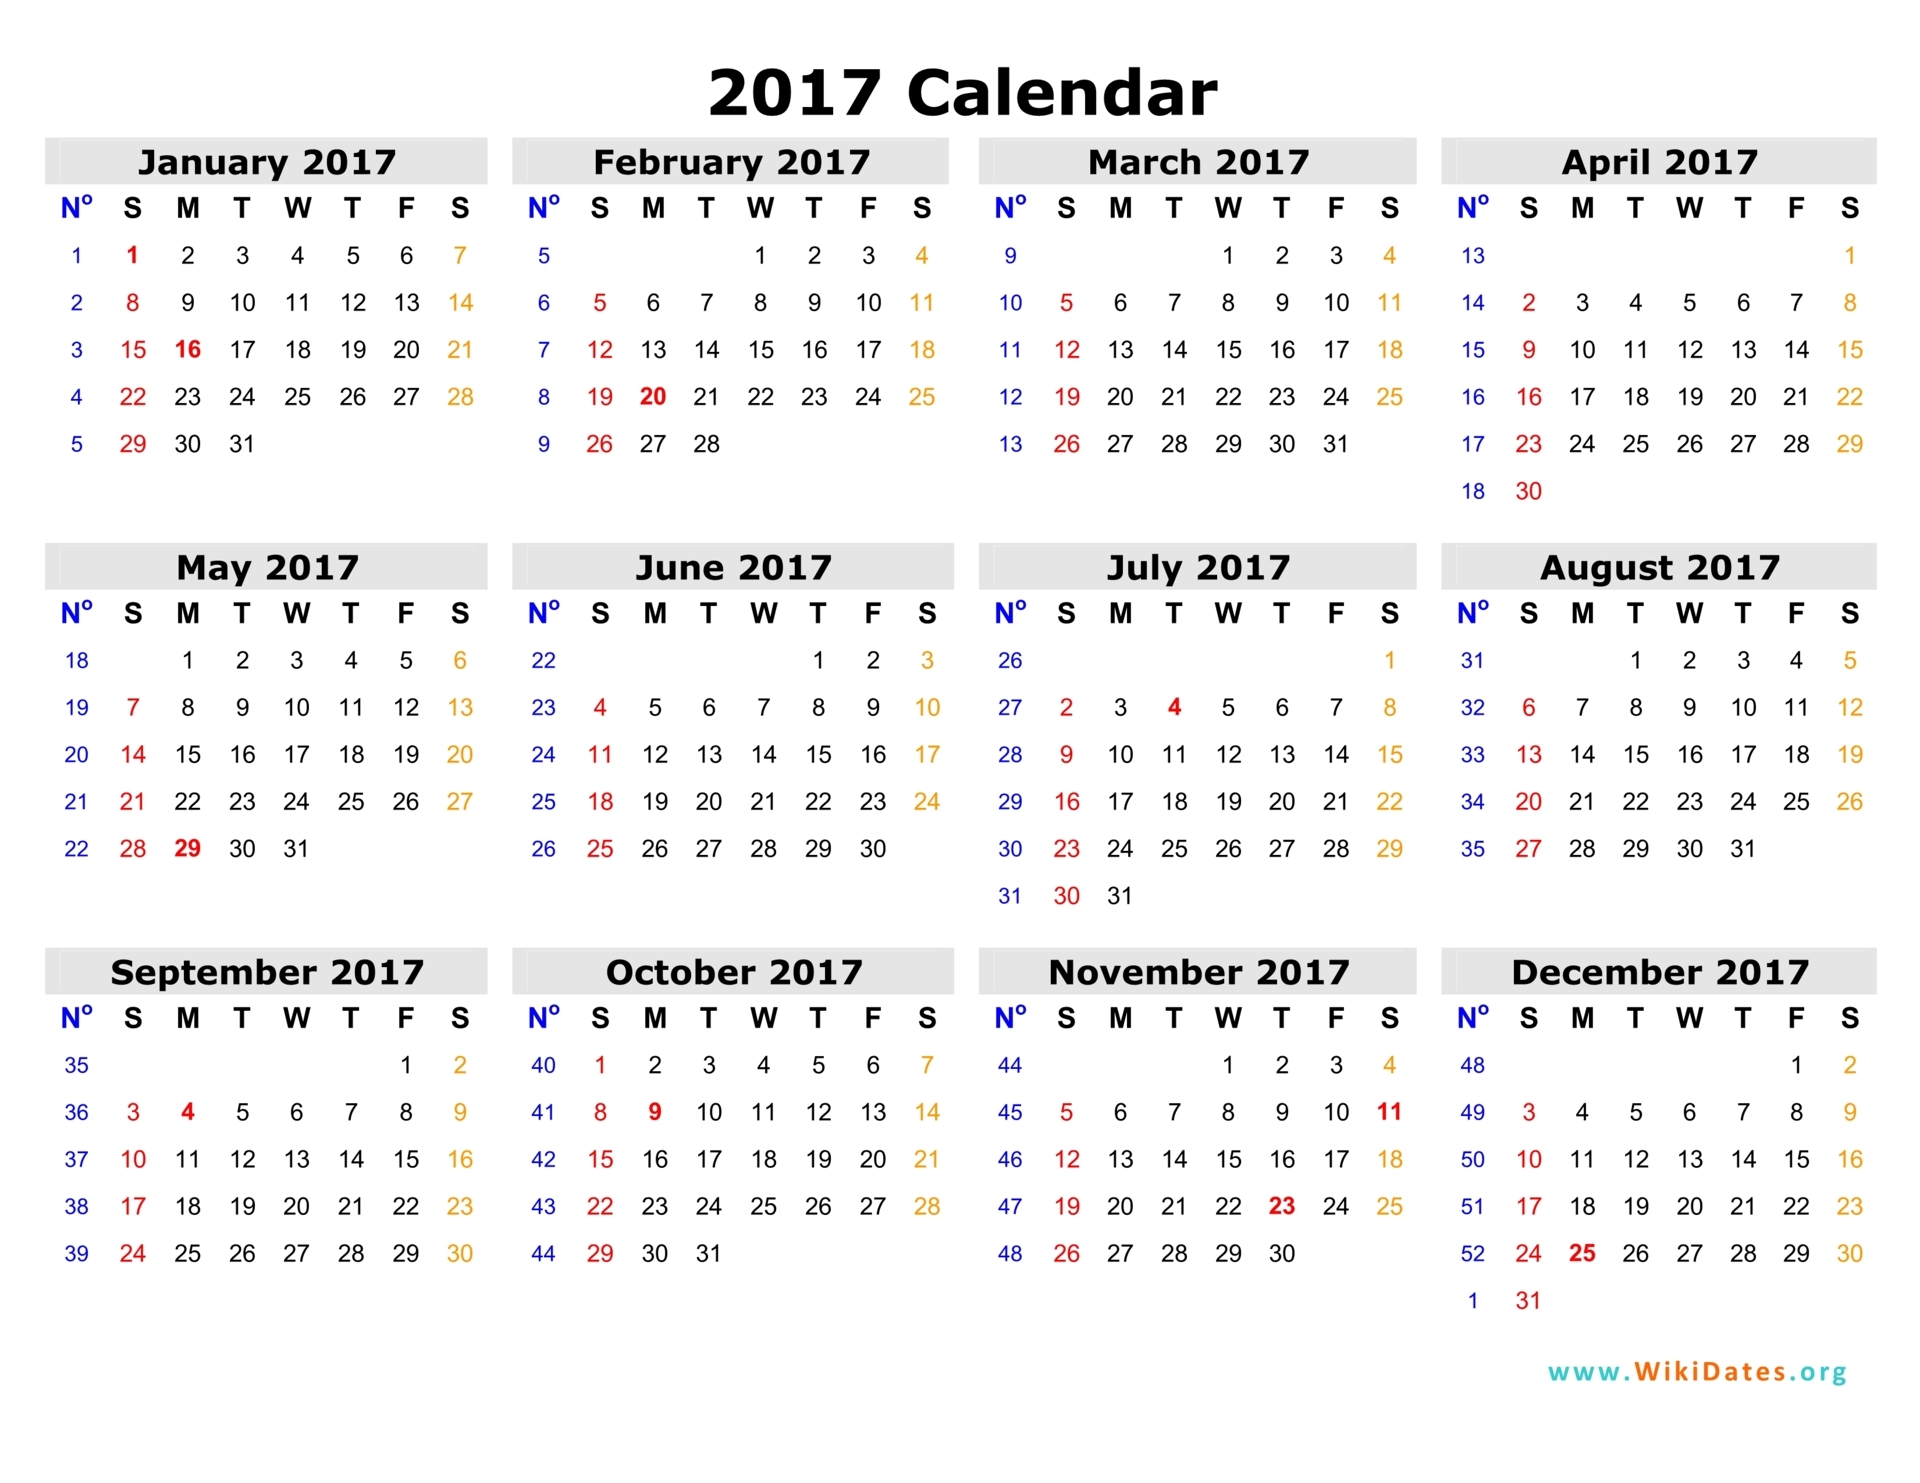 2017 Calendar Pdf | 2017 calendar with holidays